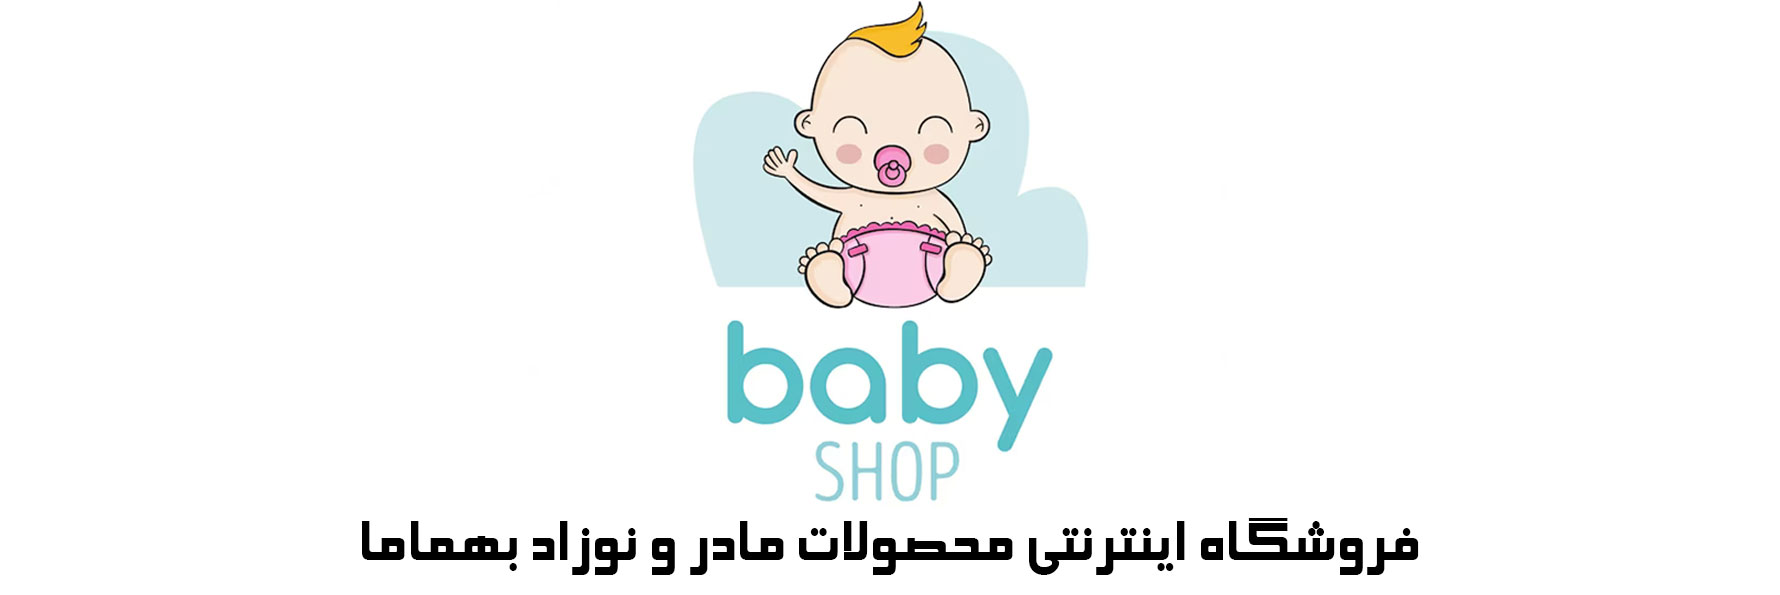 فروشگاه-اینترنتی-محصولات-نوزاد